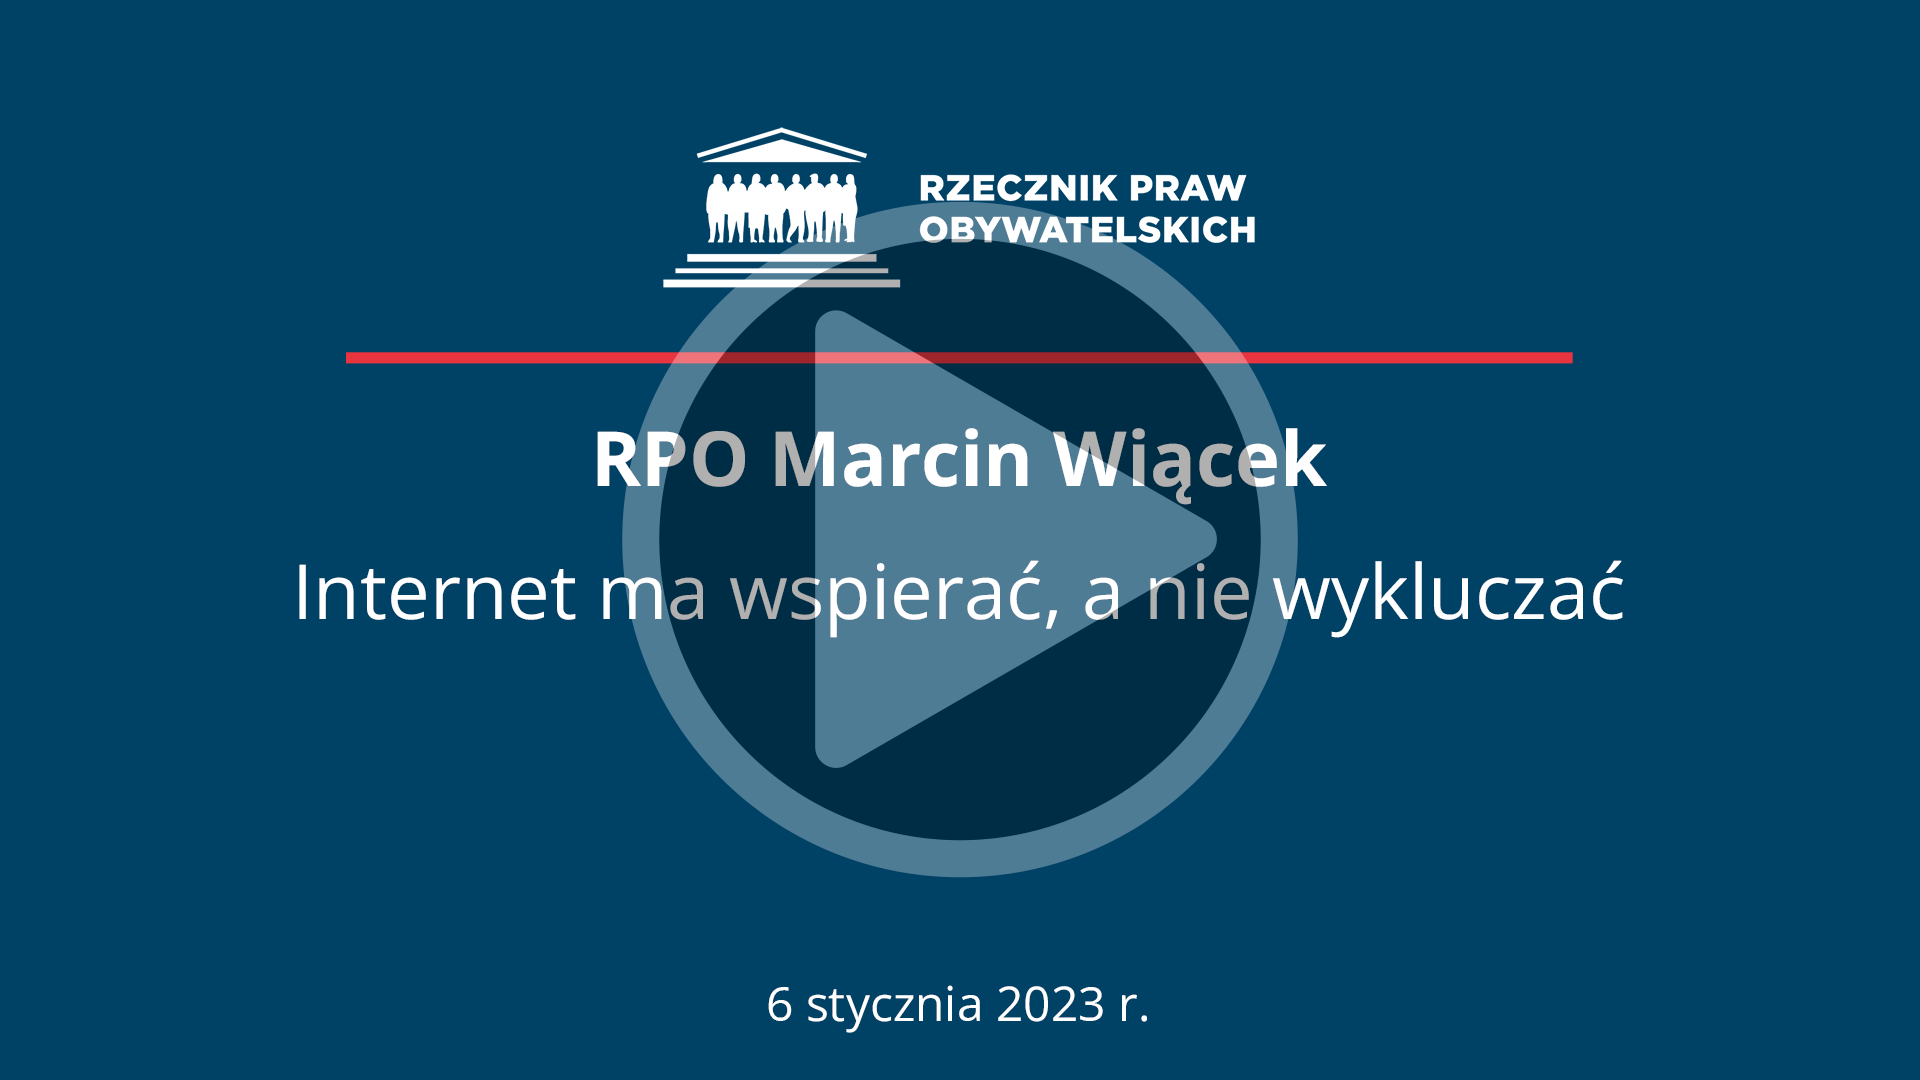 Plansza z tekstem RPO Marcin Wiącek - Internet ma wspierać, a nie wykluczać - 6 stycznia 2023 r. i symbolem odtwarzania wideo - trójkątem w kole